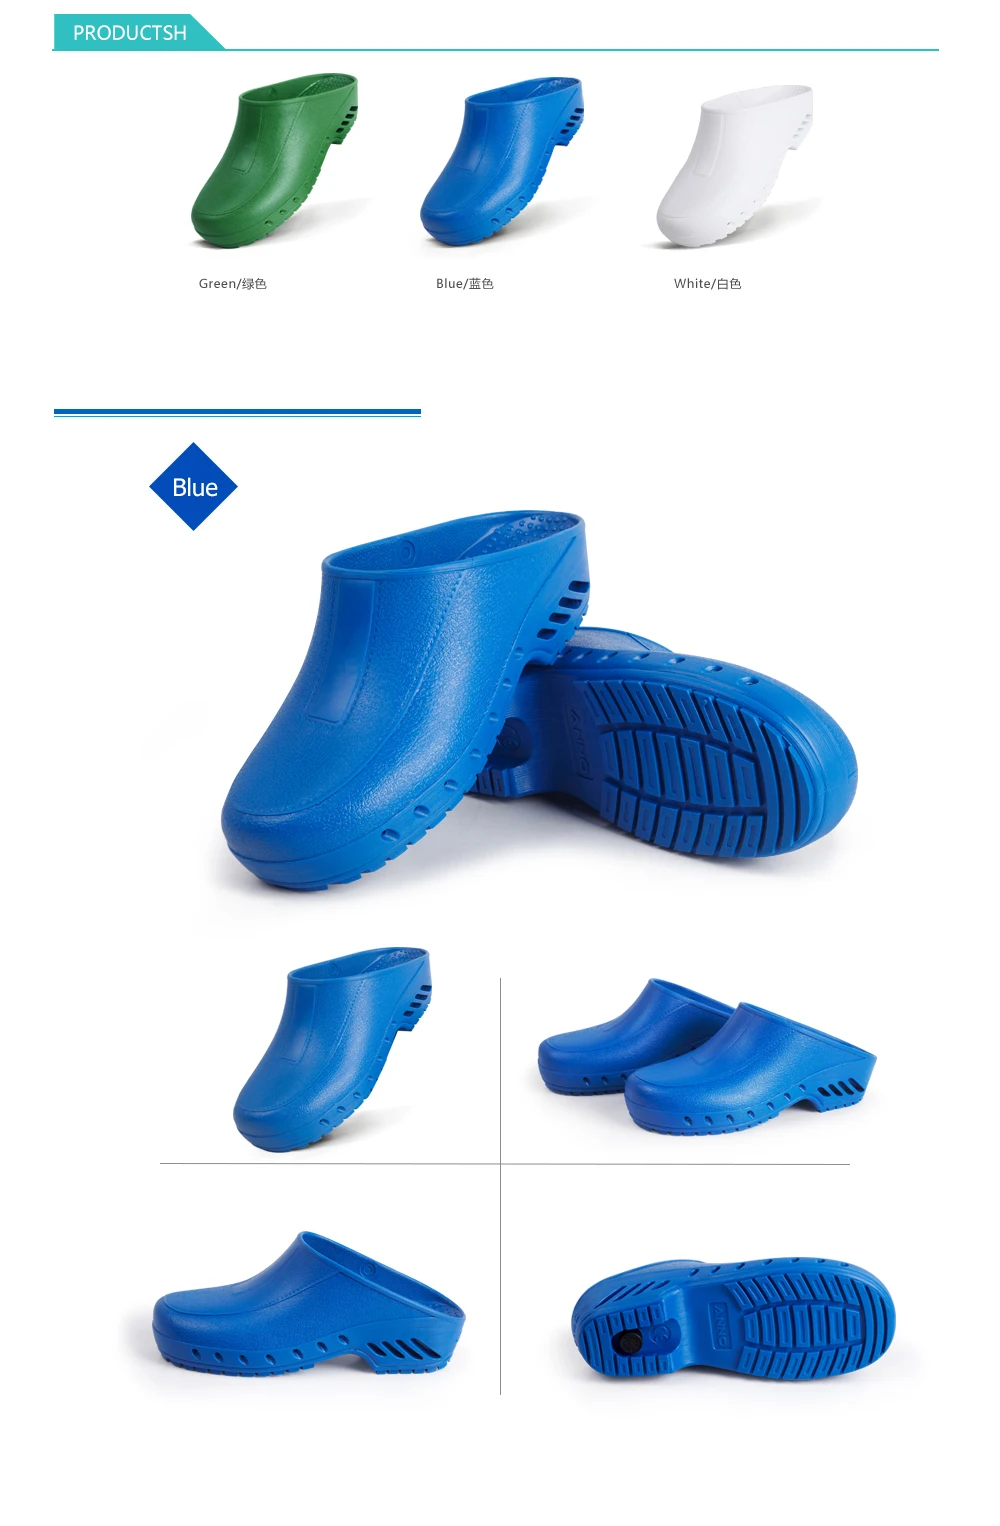 ANNO унисекс классический анти-статические Автоклавируемые антибактериальные хирургические обувь медицинская обувь безопасности